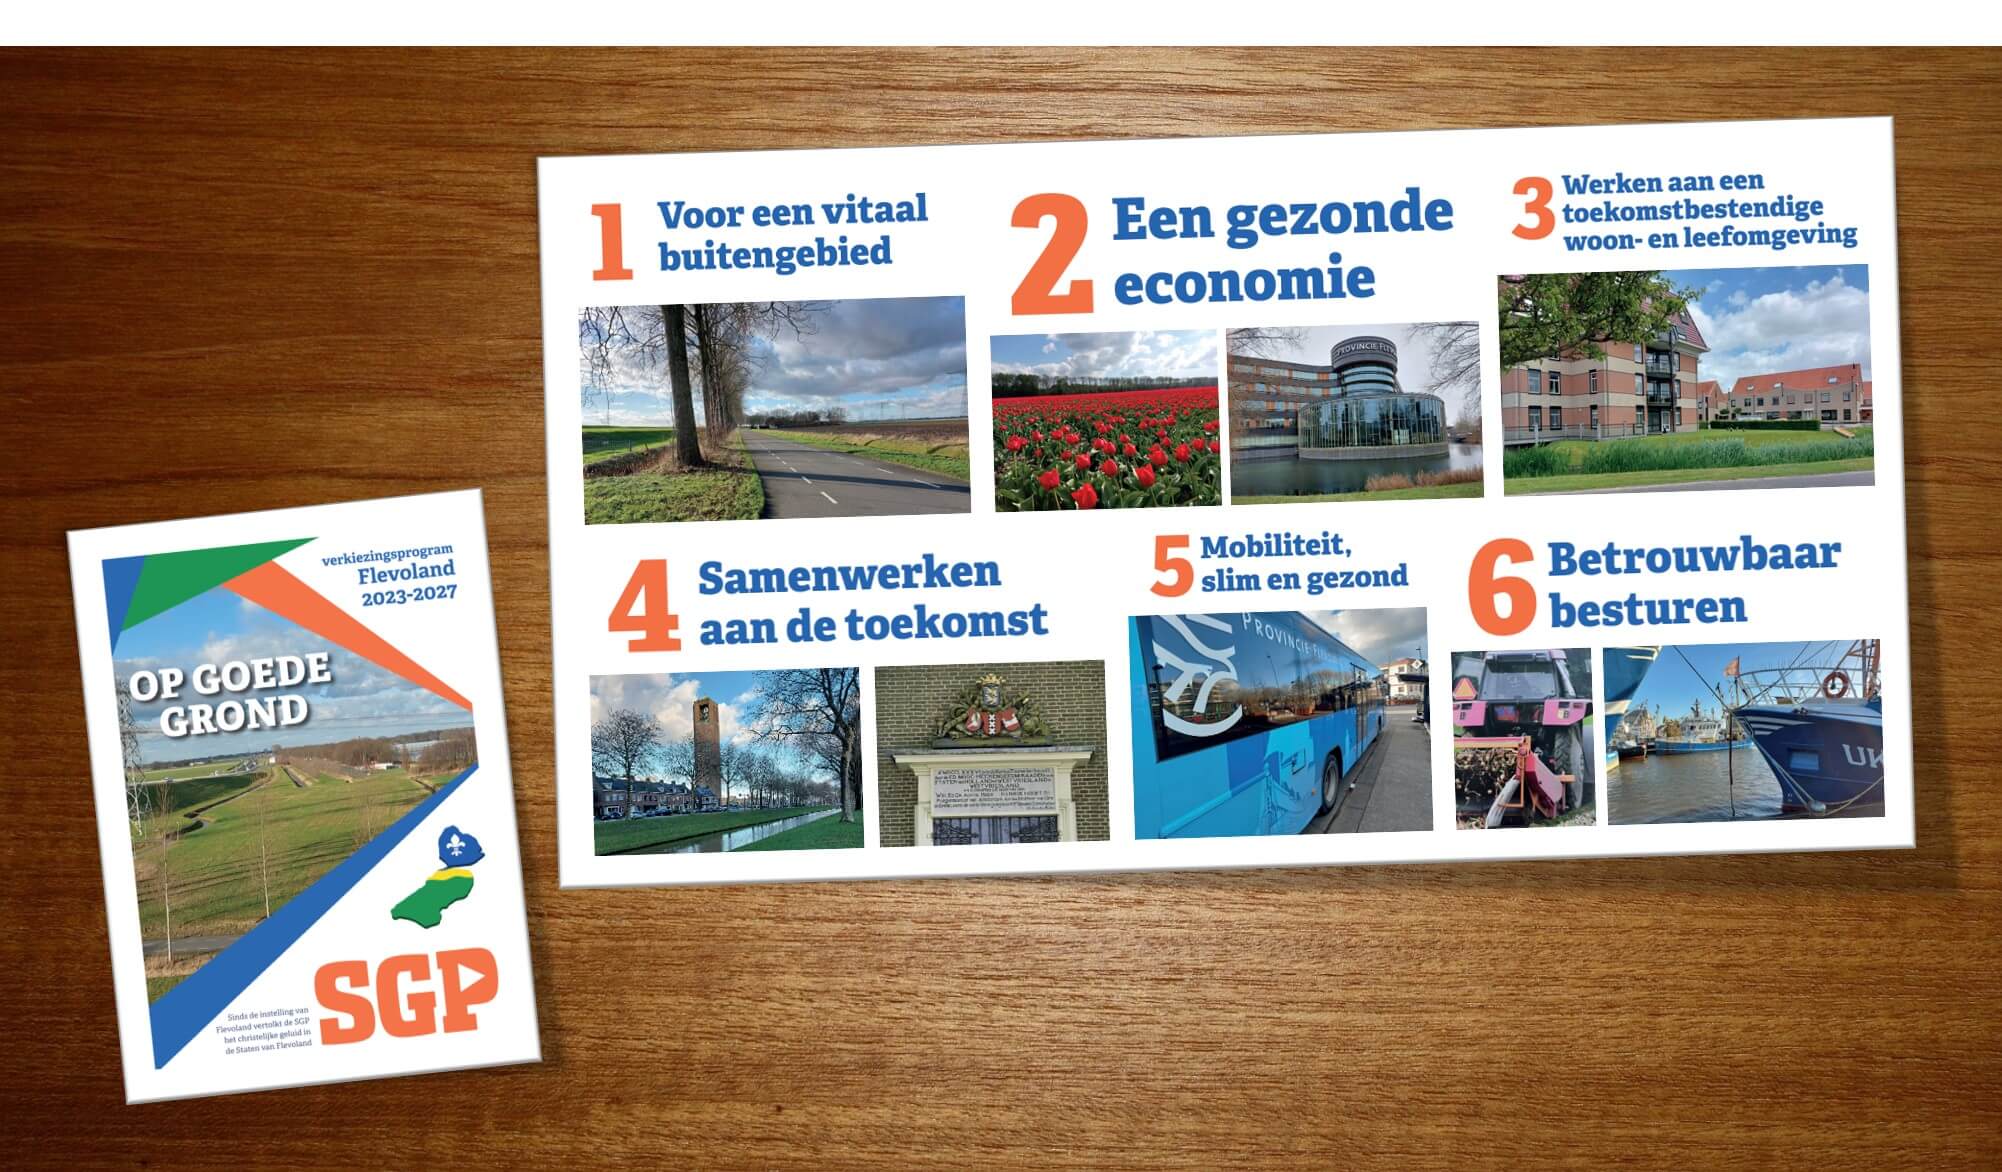 SGP Op Goede Gronden Verkiezingsprogramma Flevoland 2023-2027